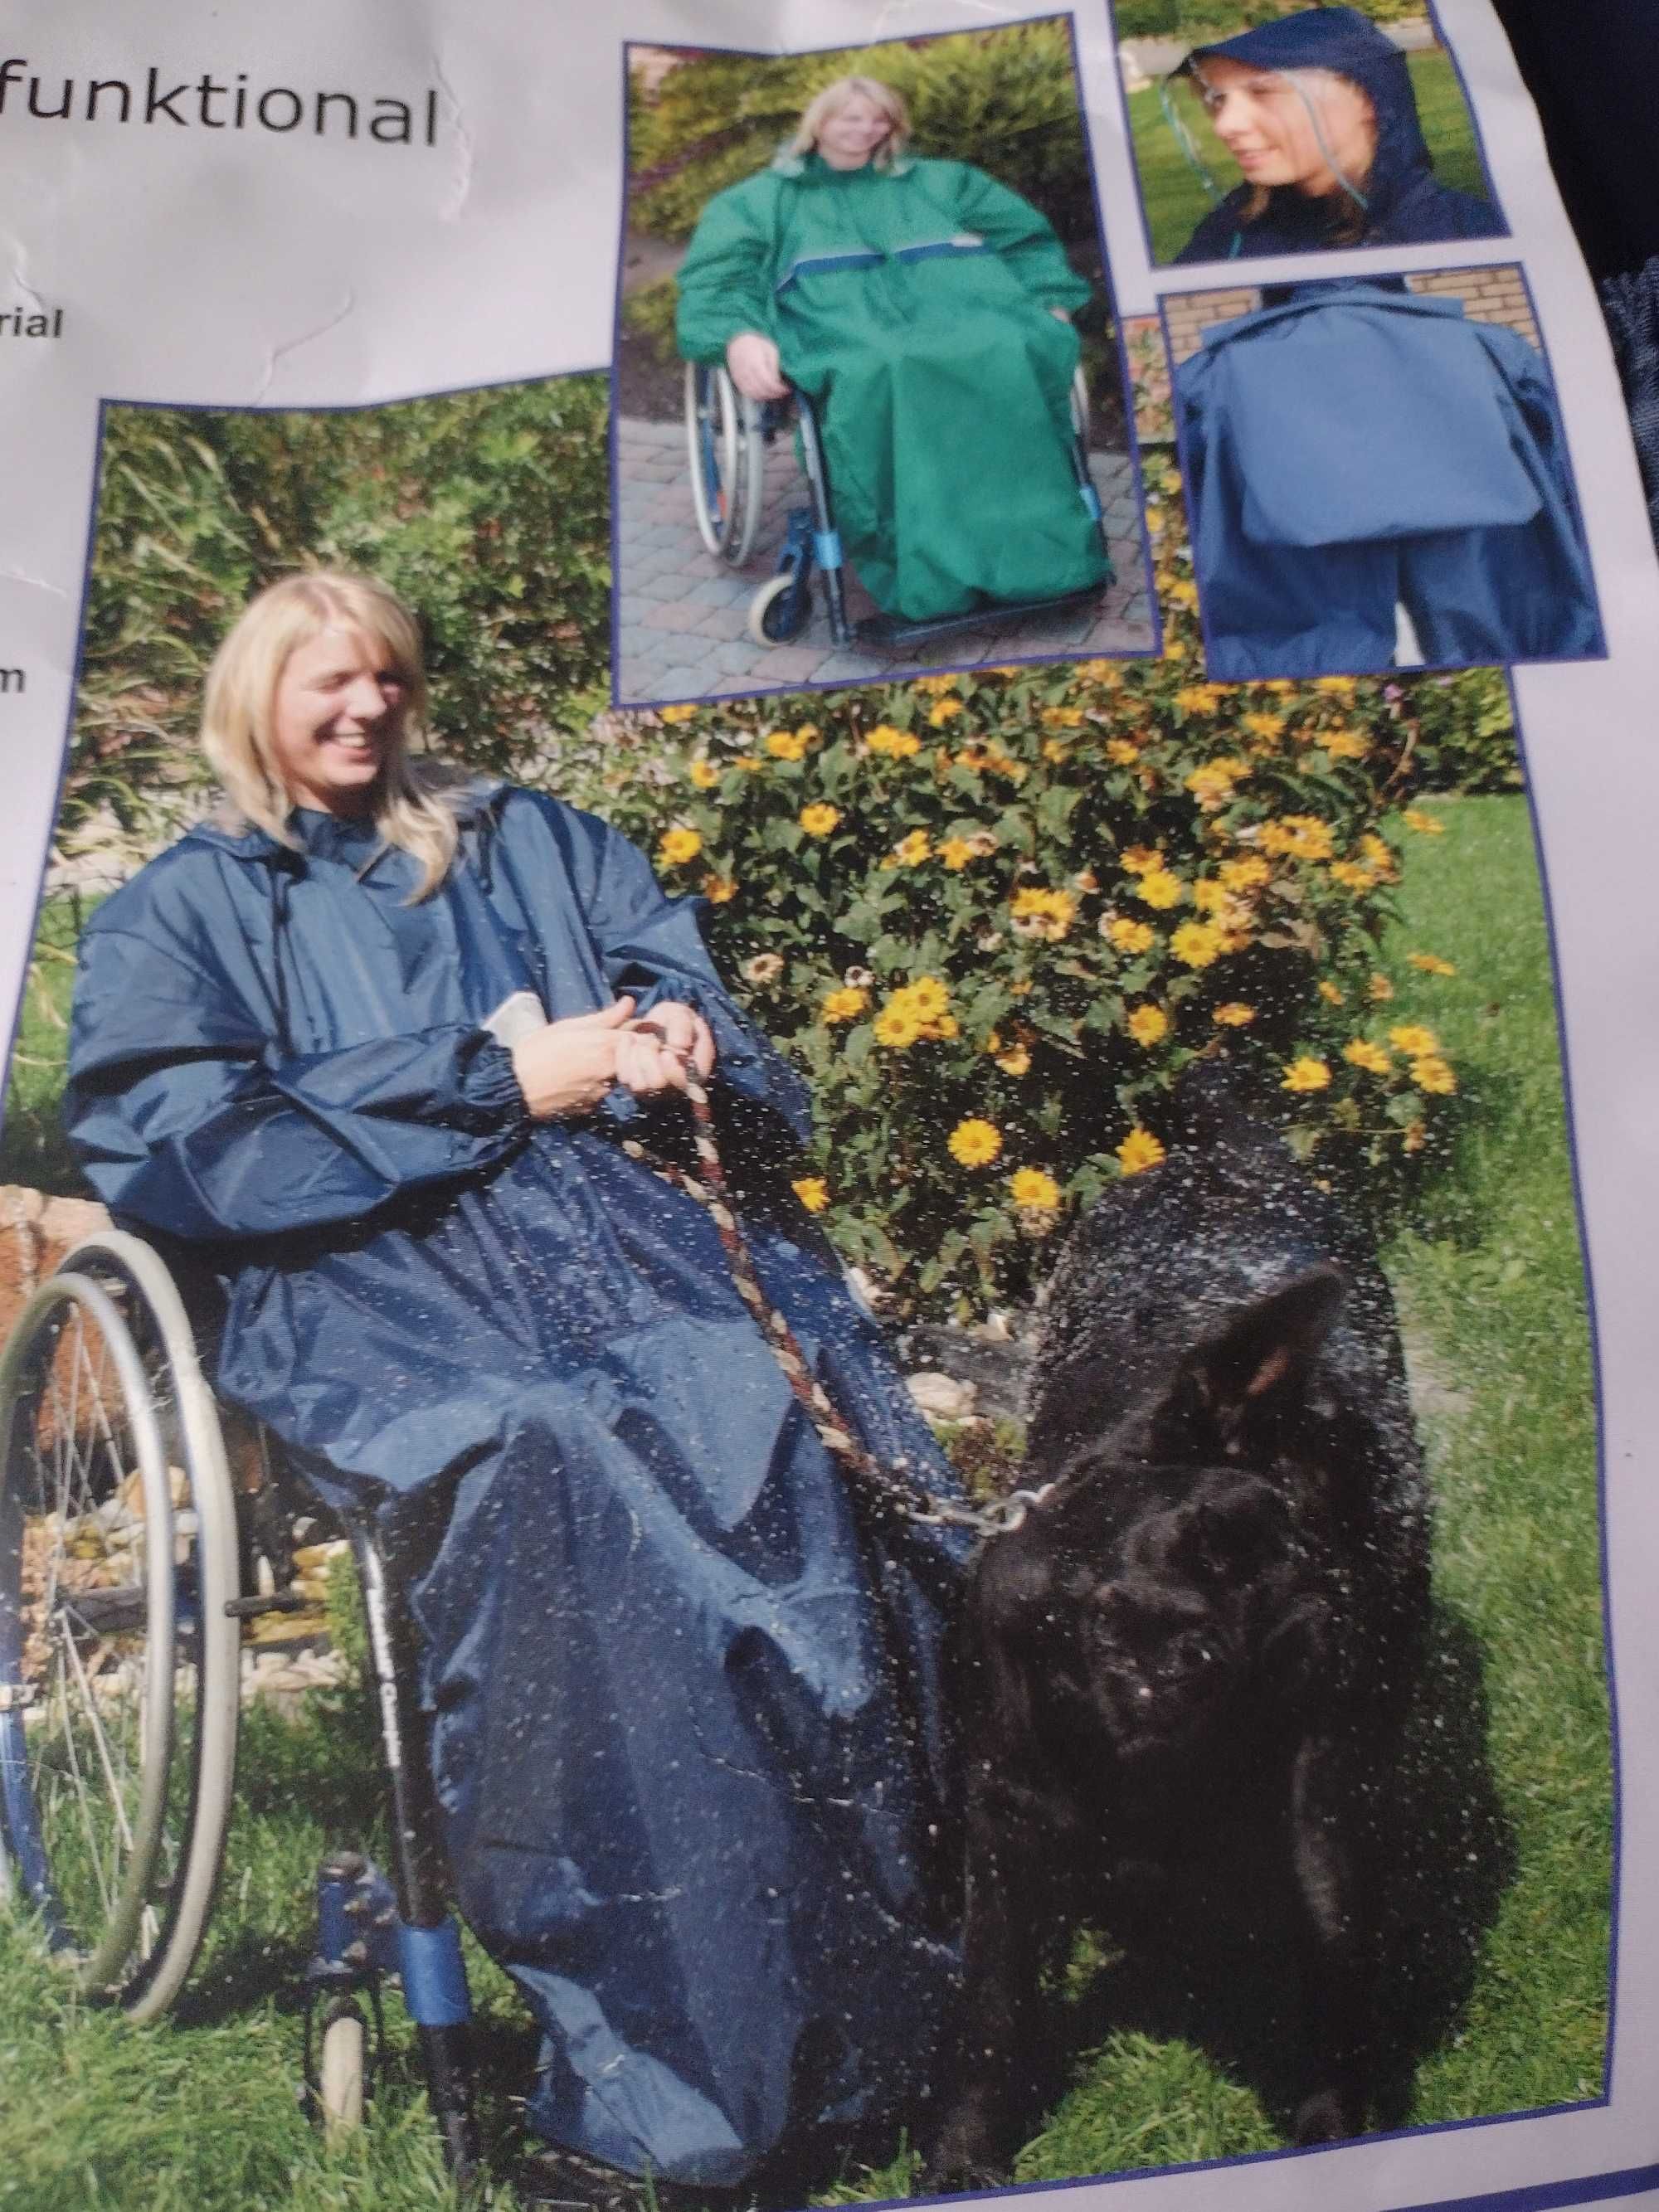 peleryna przeciwdeszczowa dla wózków inwalidzkich- firmy Orgaterm